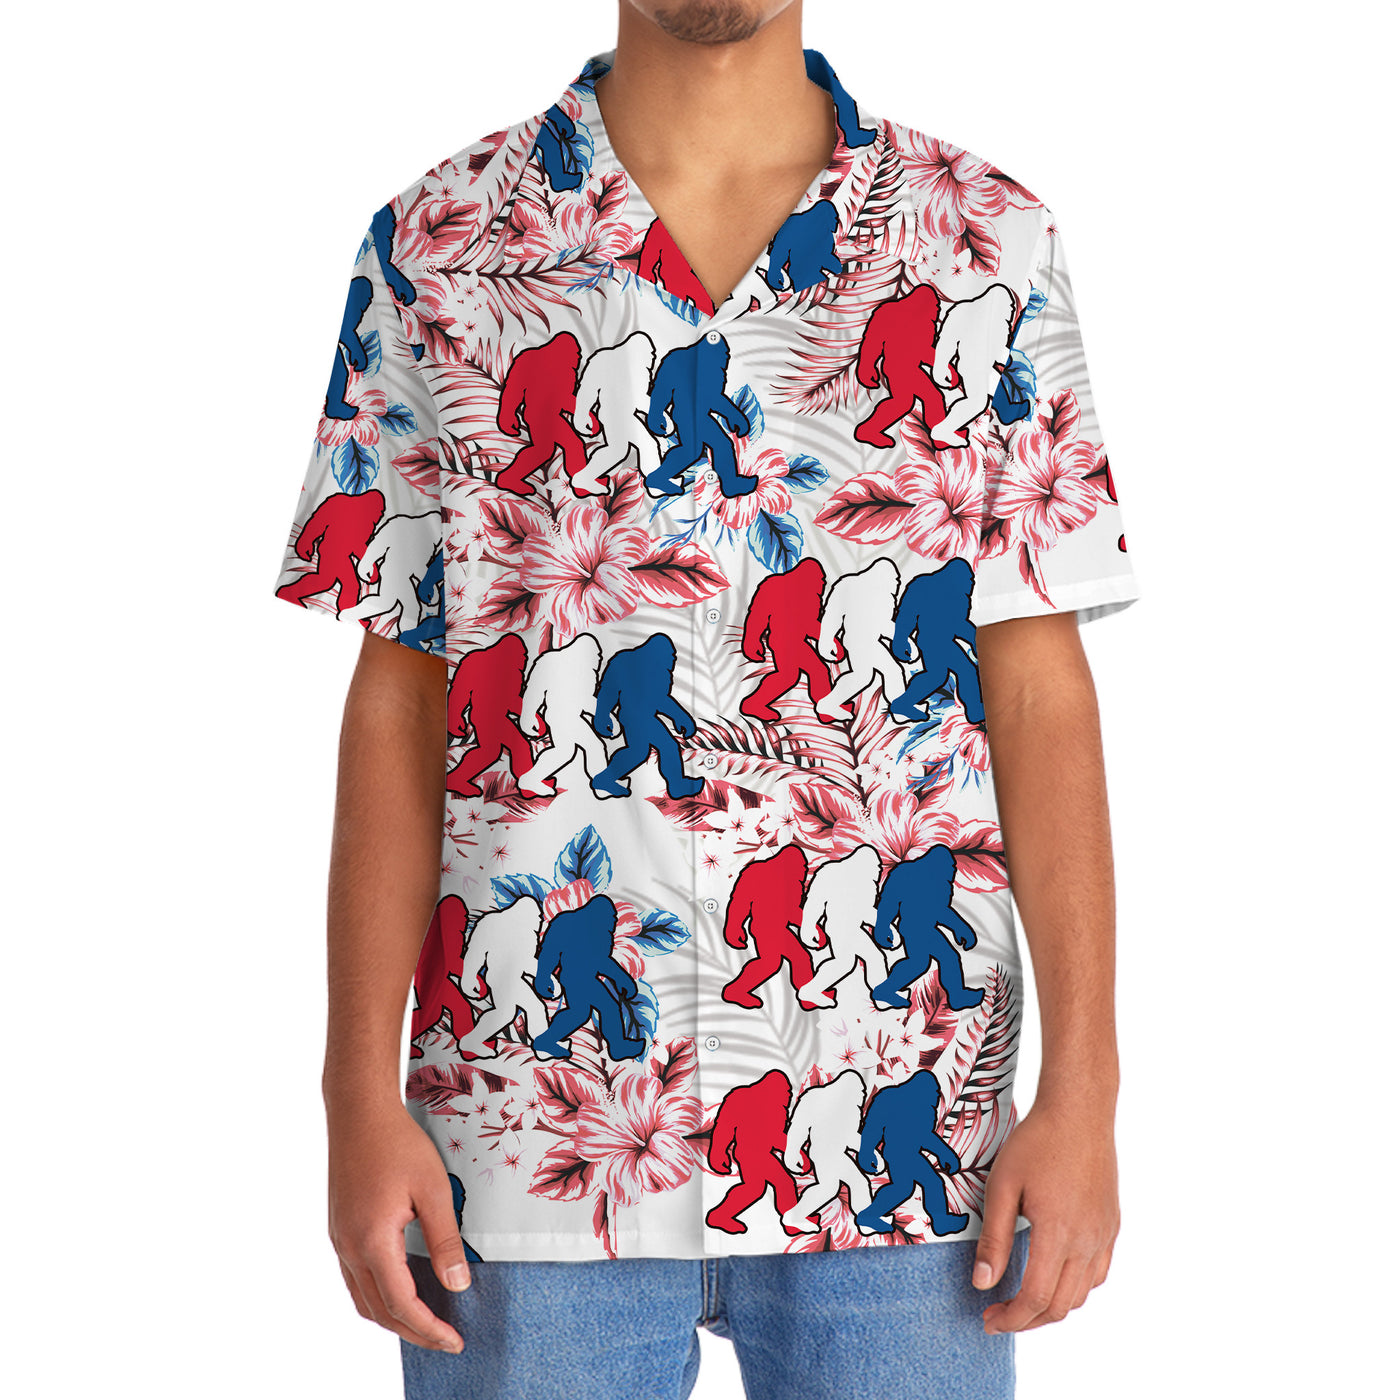 Funny Bigfoot USA Hawaiian Shirt